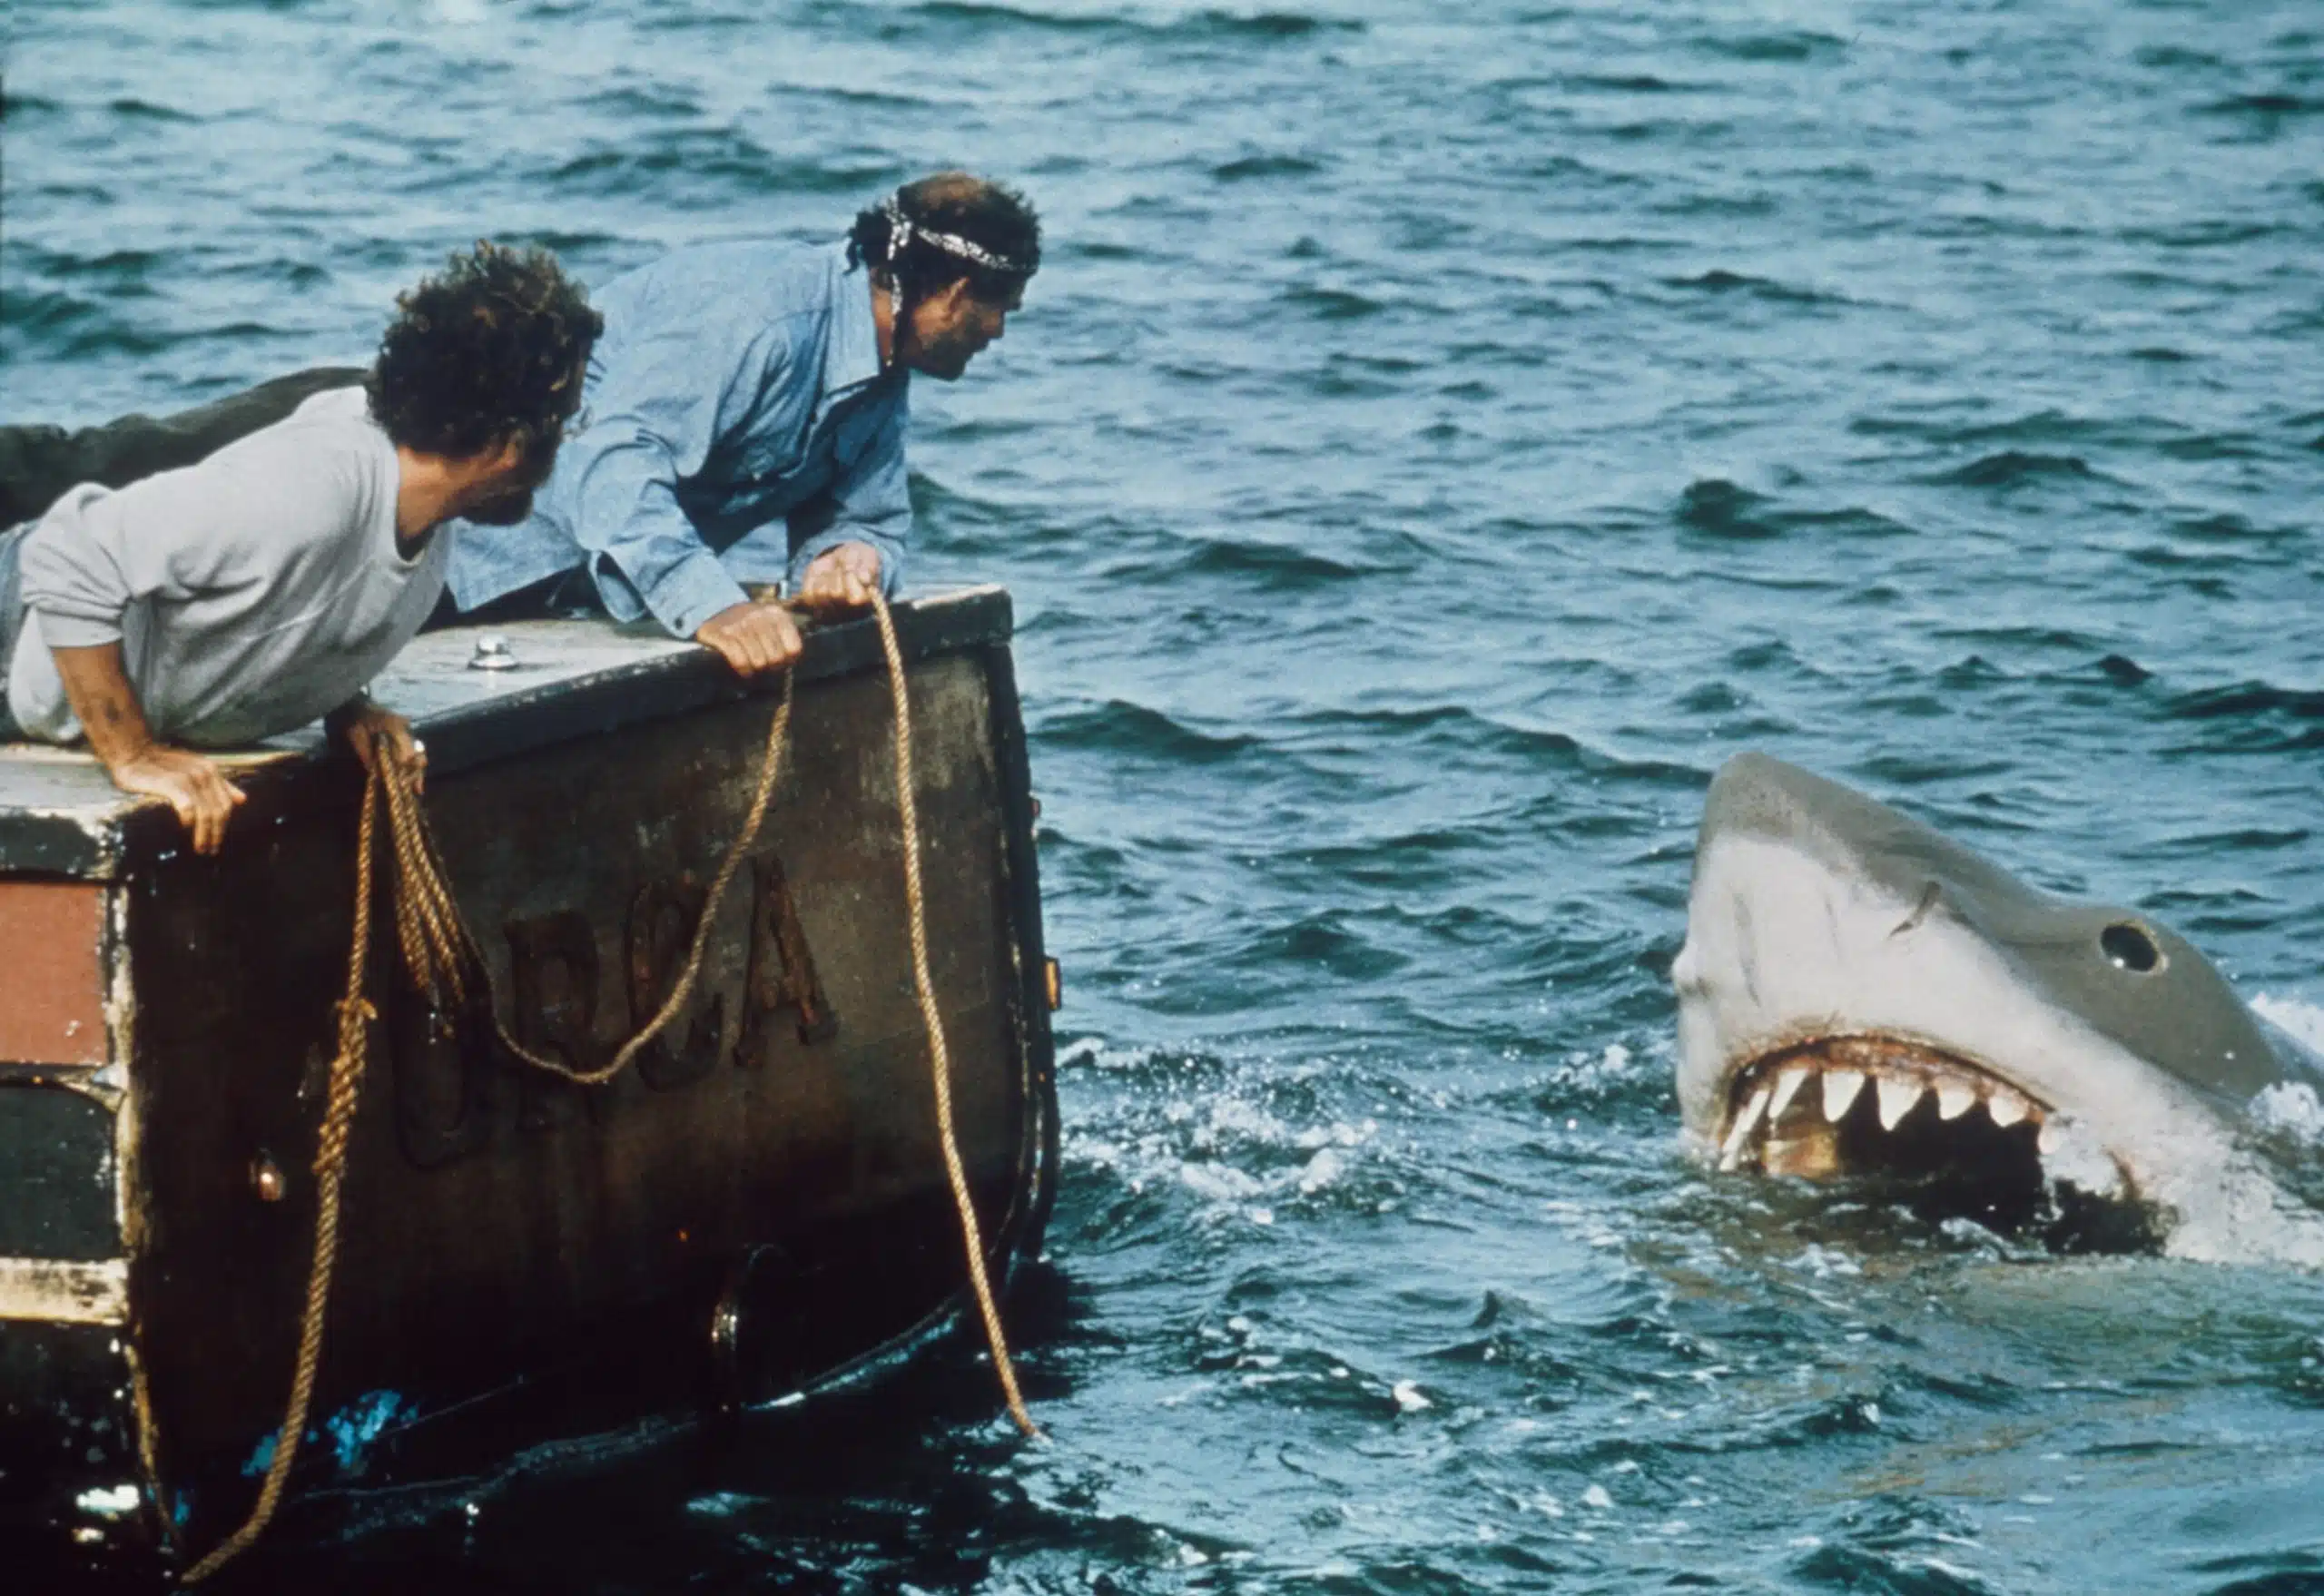 JAWS, from left: Richard Dreyfuss, Robert Shaw, 1975